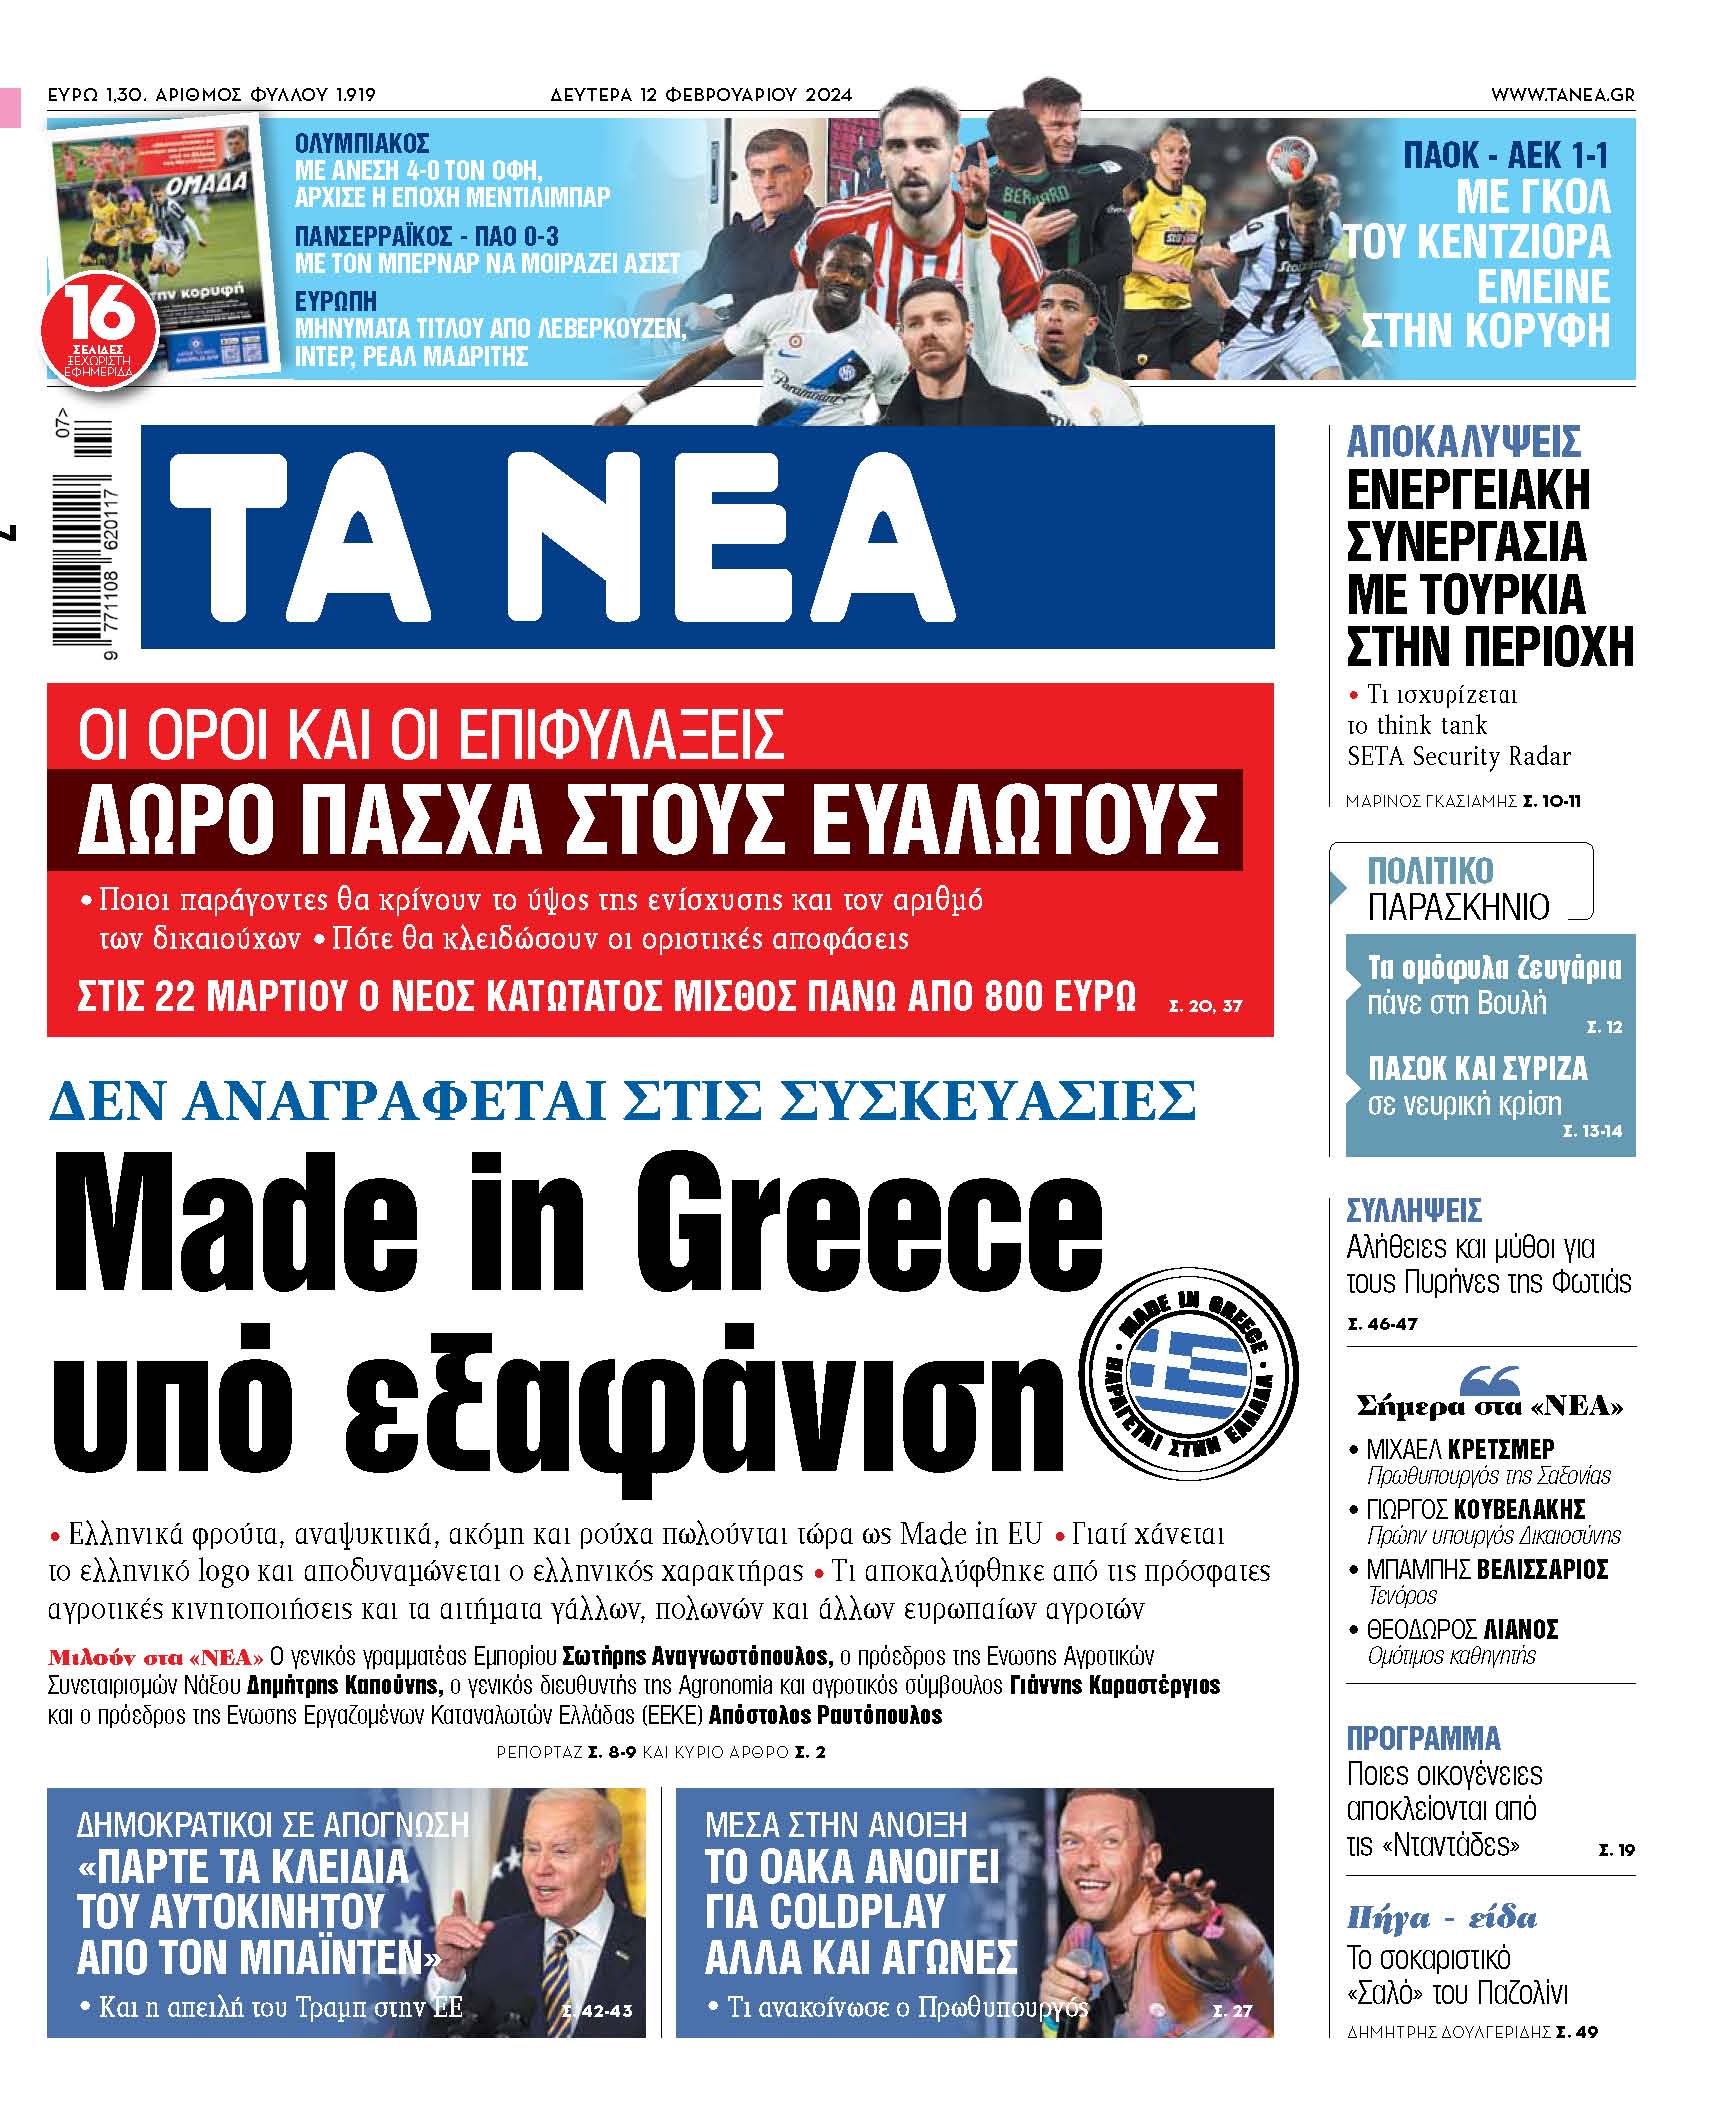 Στα «ΝΕΑ» της Δευτέρας: Made in Greece υπό εξαφάνιση